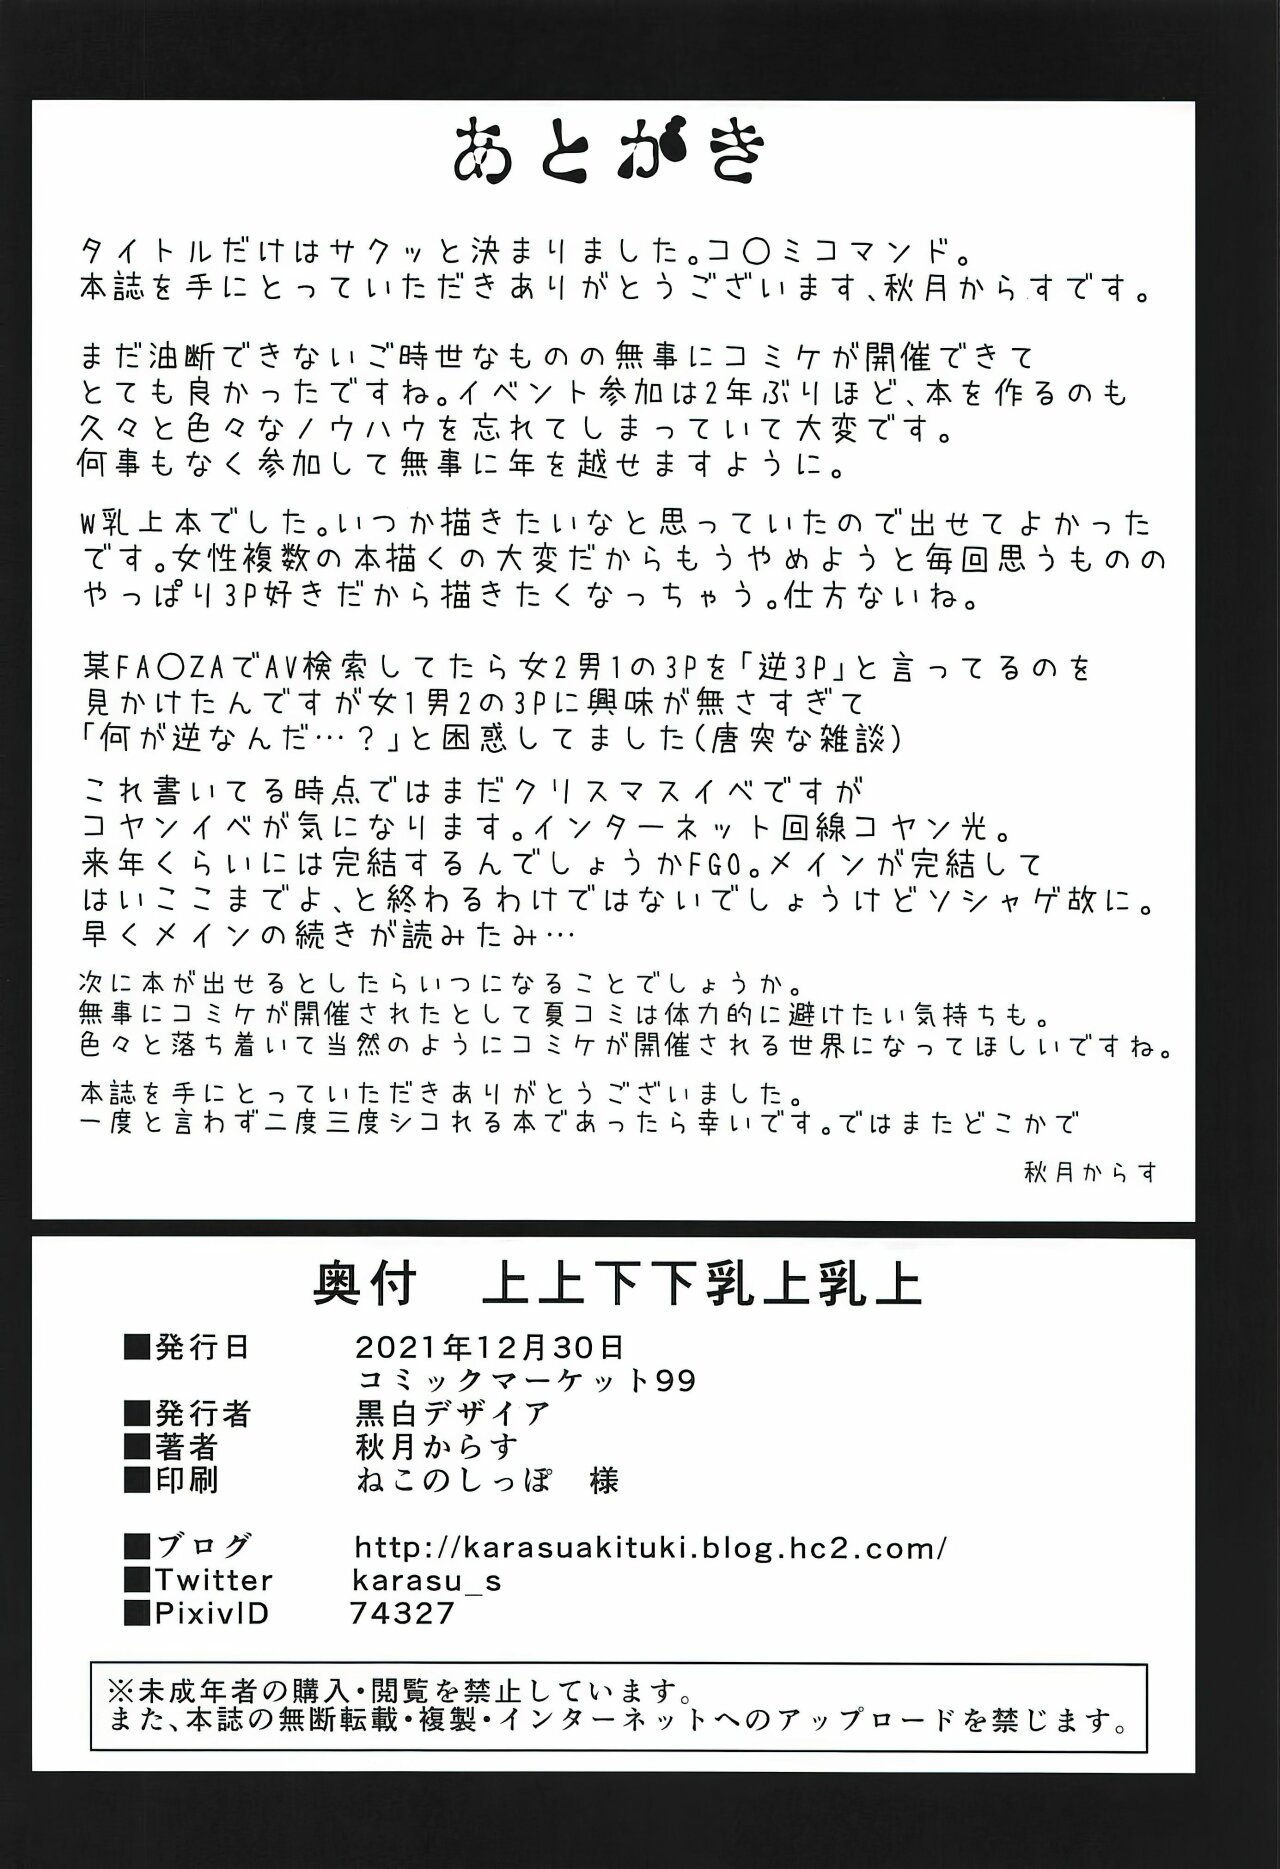 &#91;Akitsuki Karasu&#93;Ue ue shita shita chichi ue chichi ue(Fate Grand Order) - 24